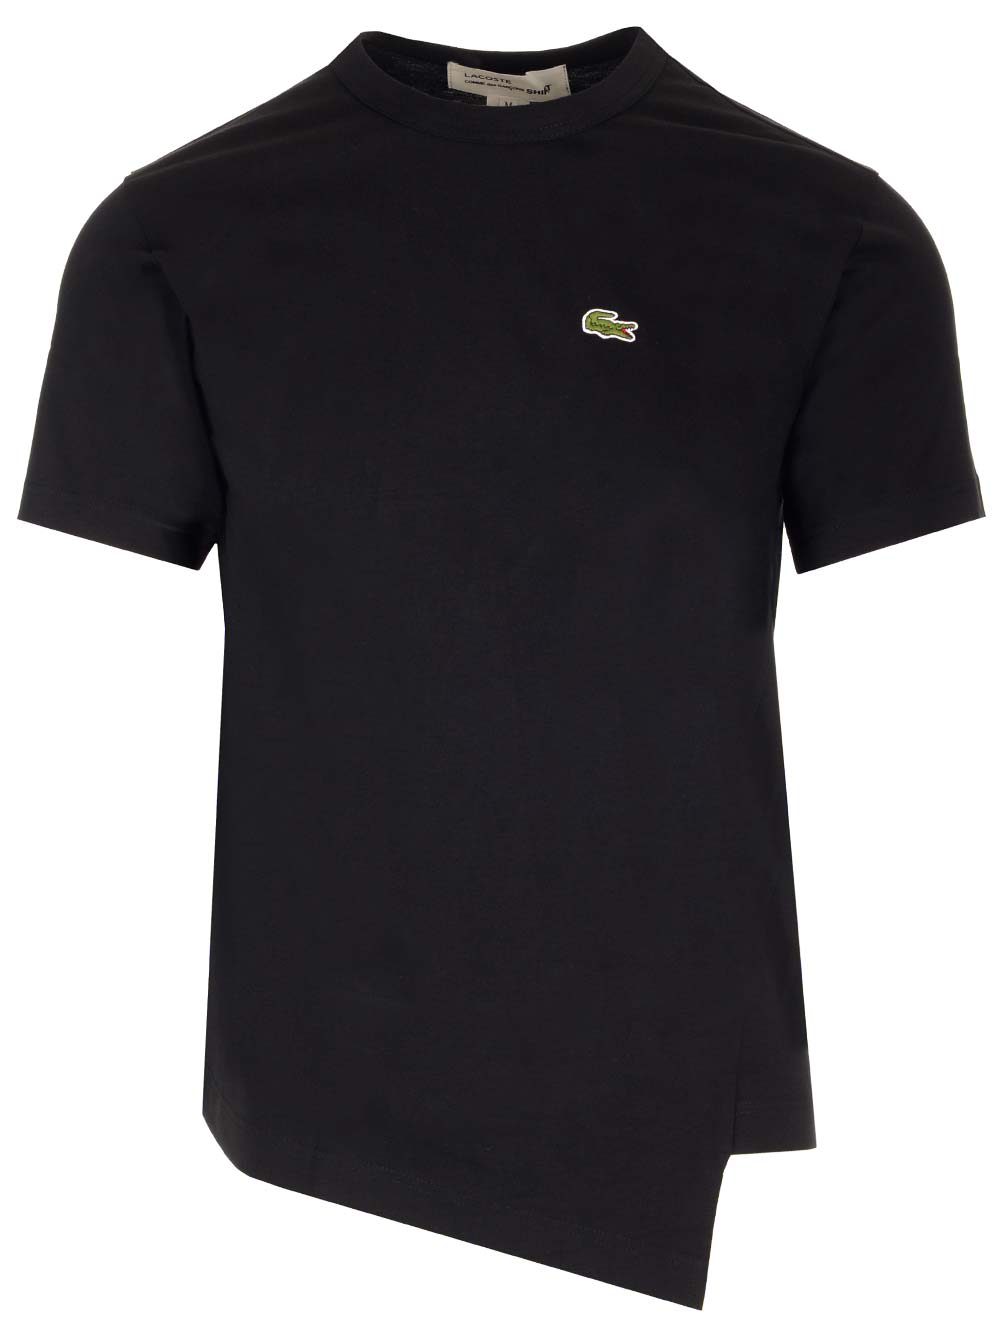 Comme Des Garçons Shirt Black Asymmetric T-shirt X La Coste